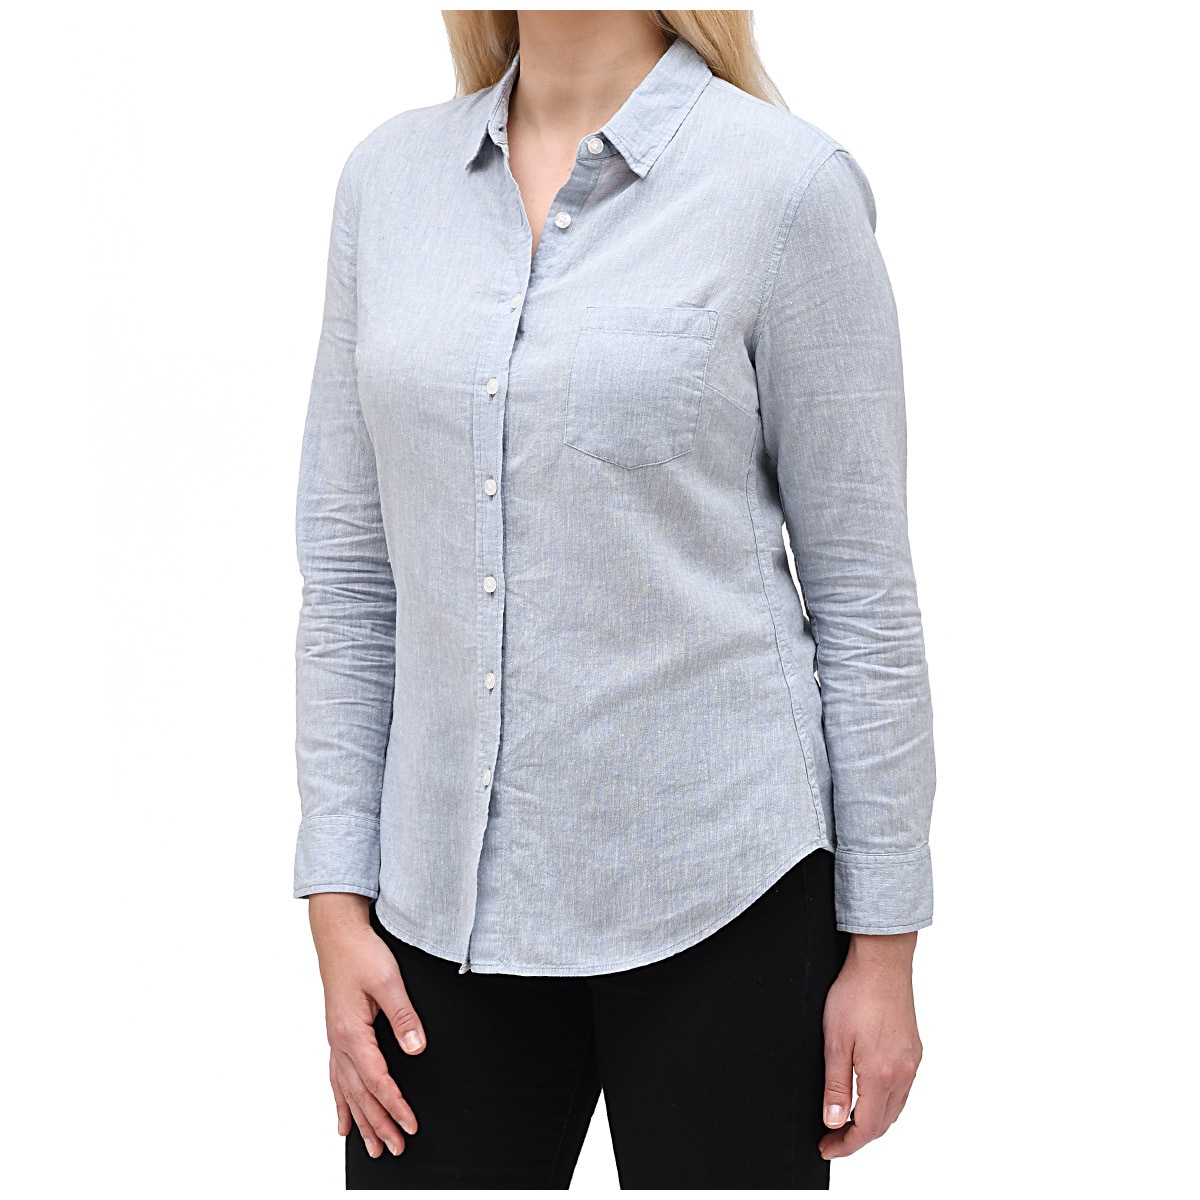 Jachs Women's Linen Shirt - Light Blue